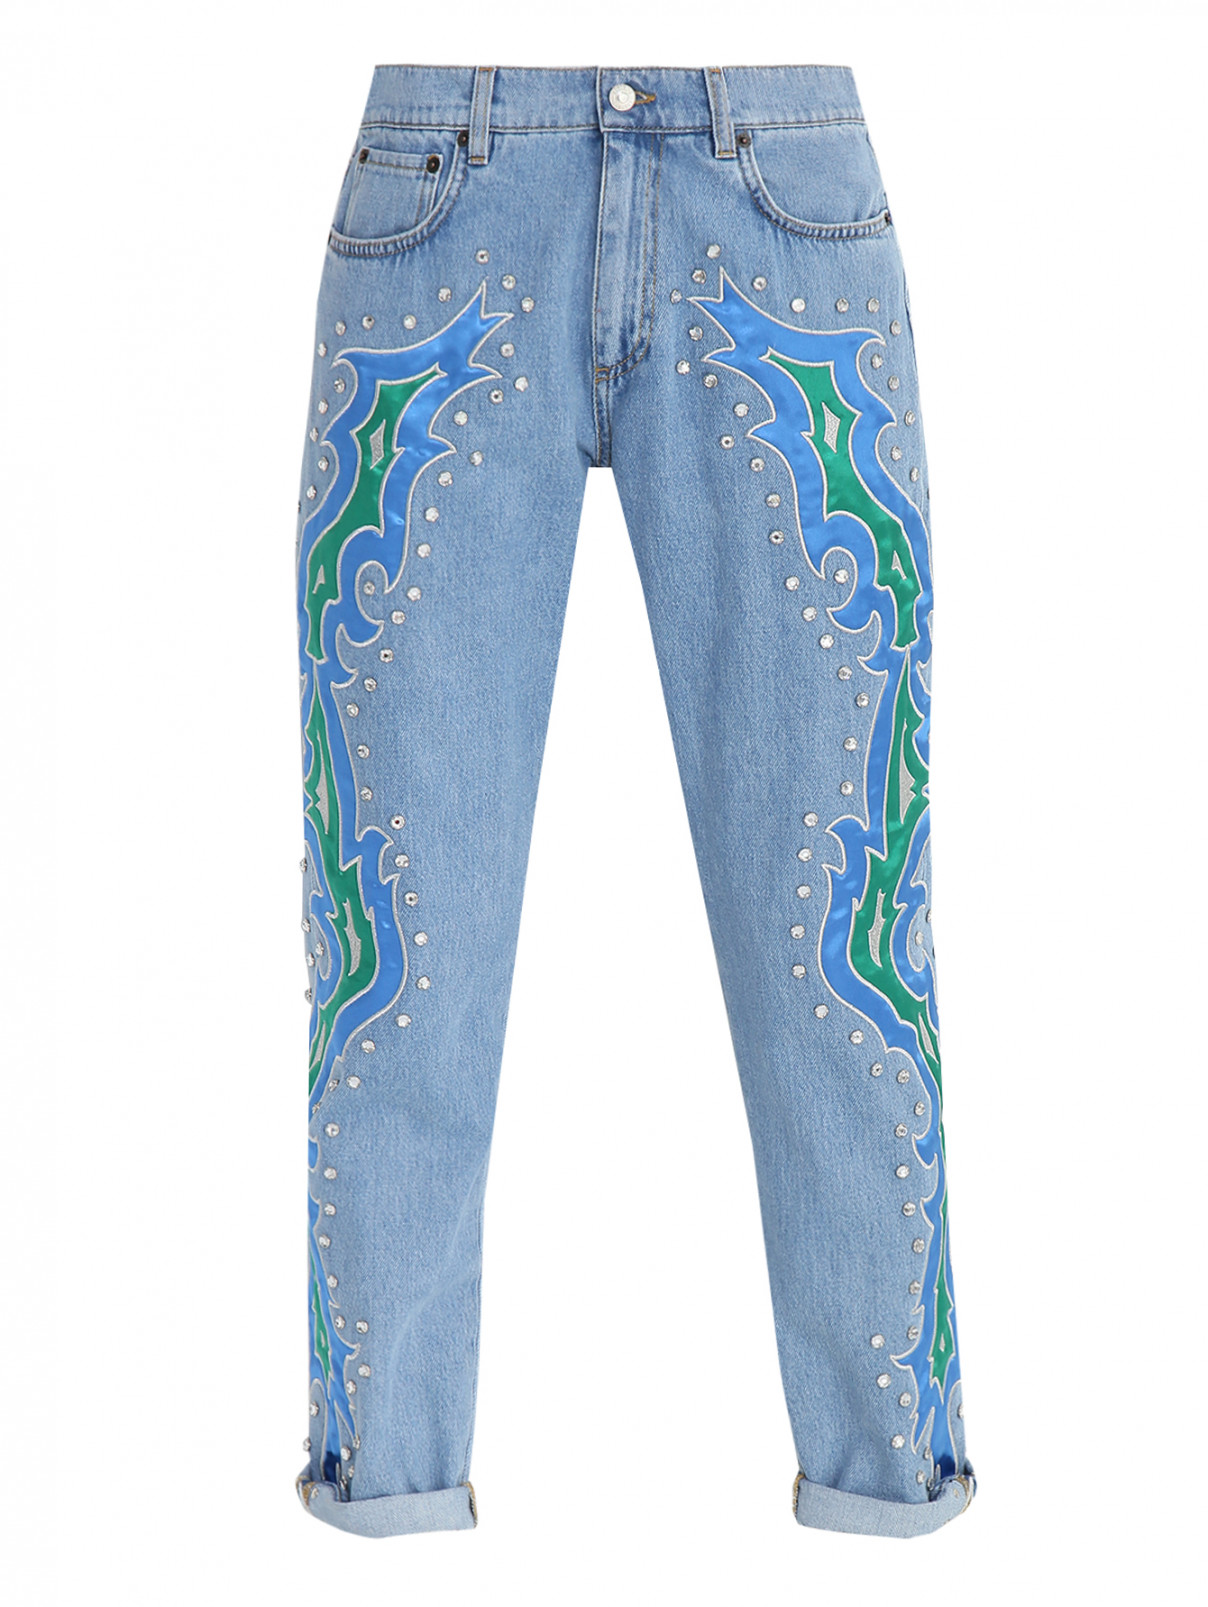 Джинсы из хлопка с вышивкой и аппликацией из страз Moschino Couture  –  Общий вид  – Цвет:  Синий